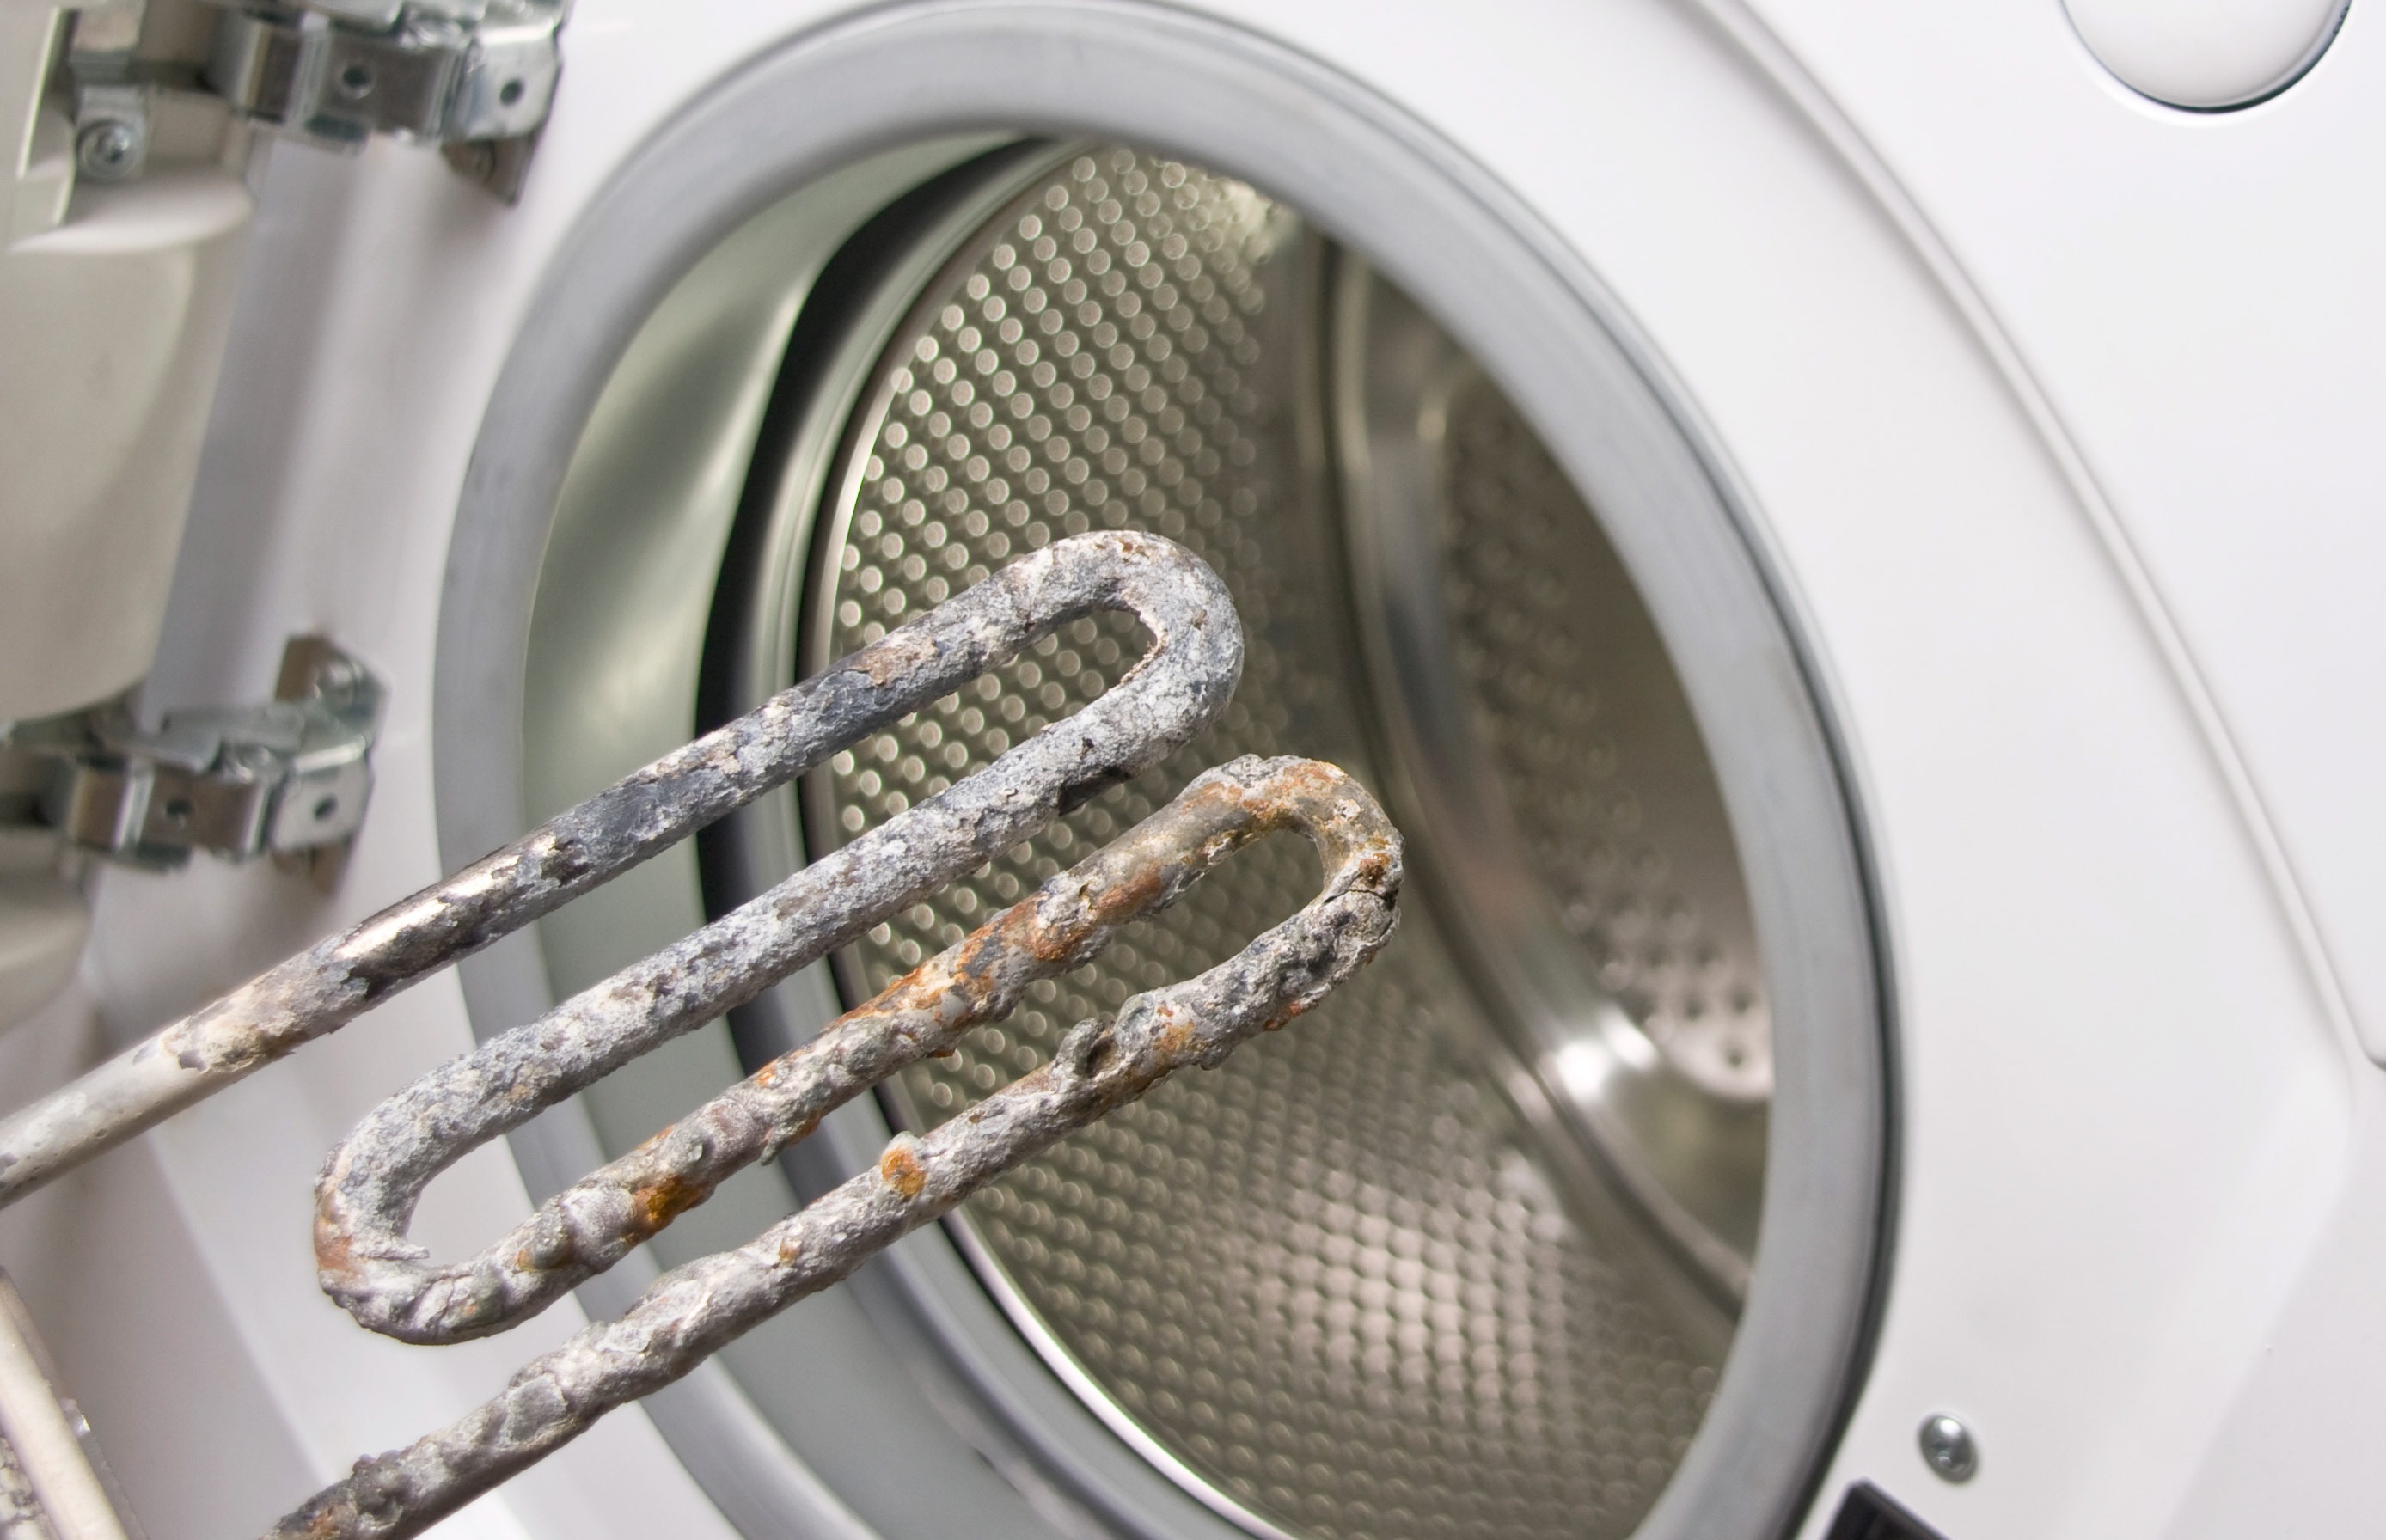 L'élément chauffant brûle souvent sur les machines à laver et à sécher